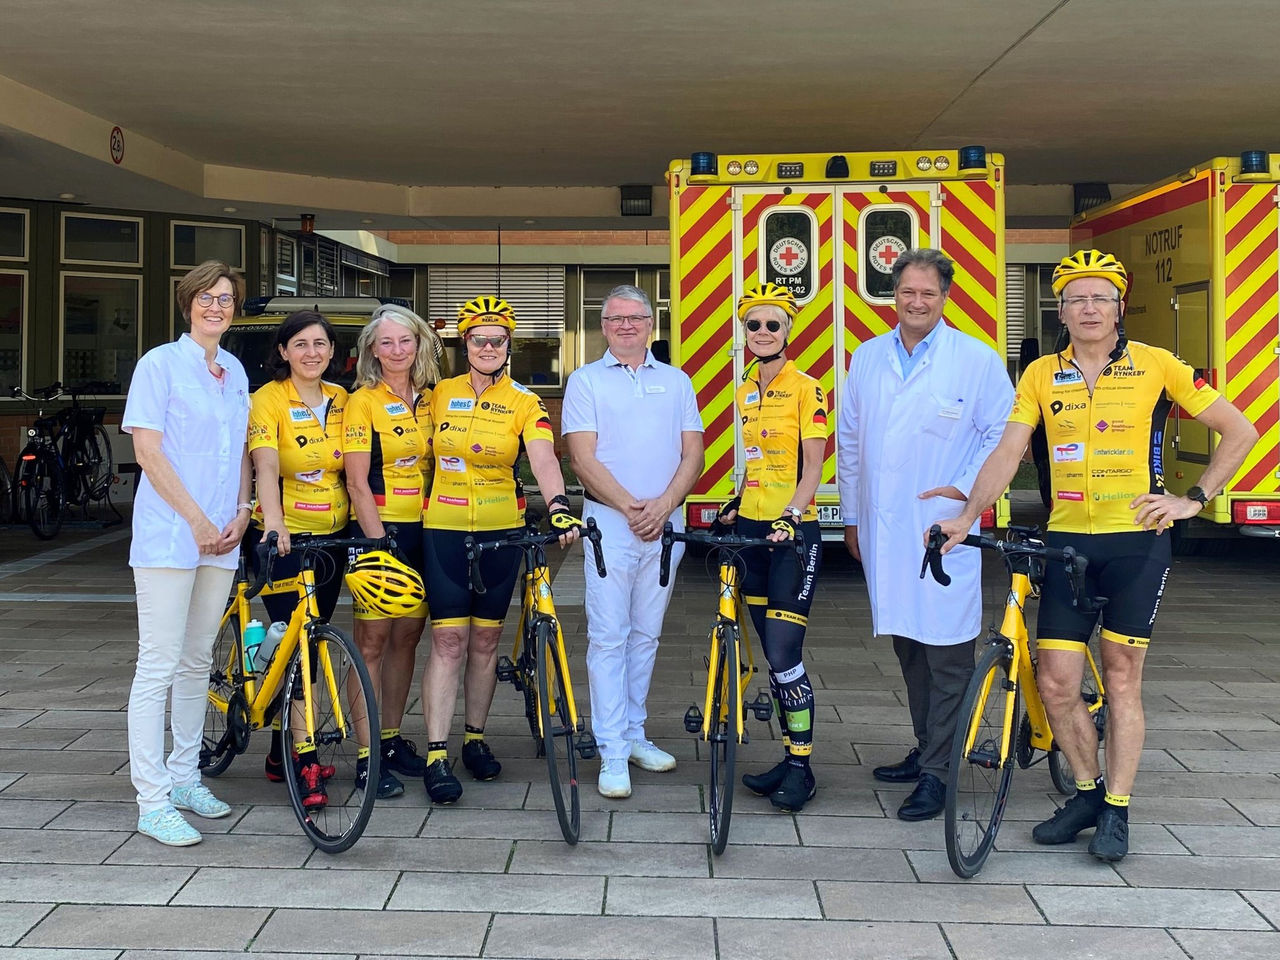 In die Pedale treten und Gutes tun: Das Helios Klinikum Emil von Behring unterstützt bekanntes Charity-Radsportevent